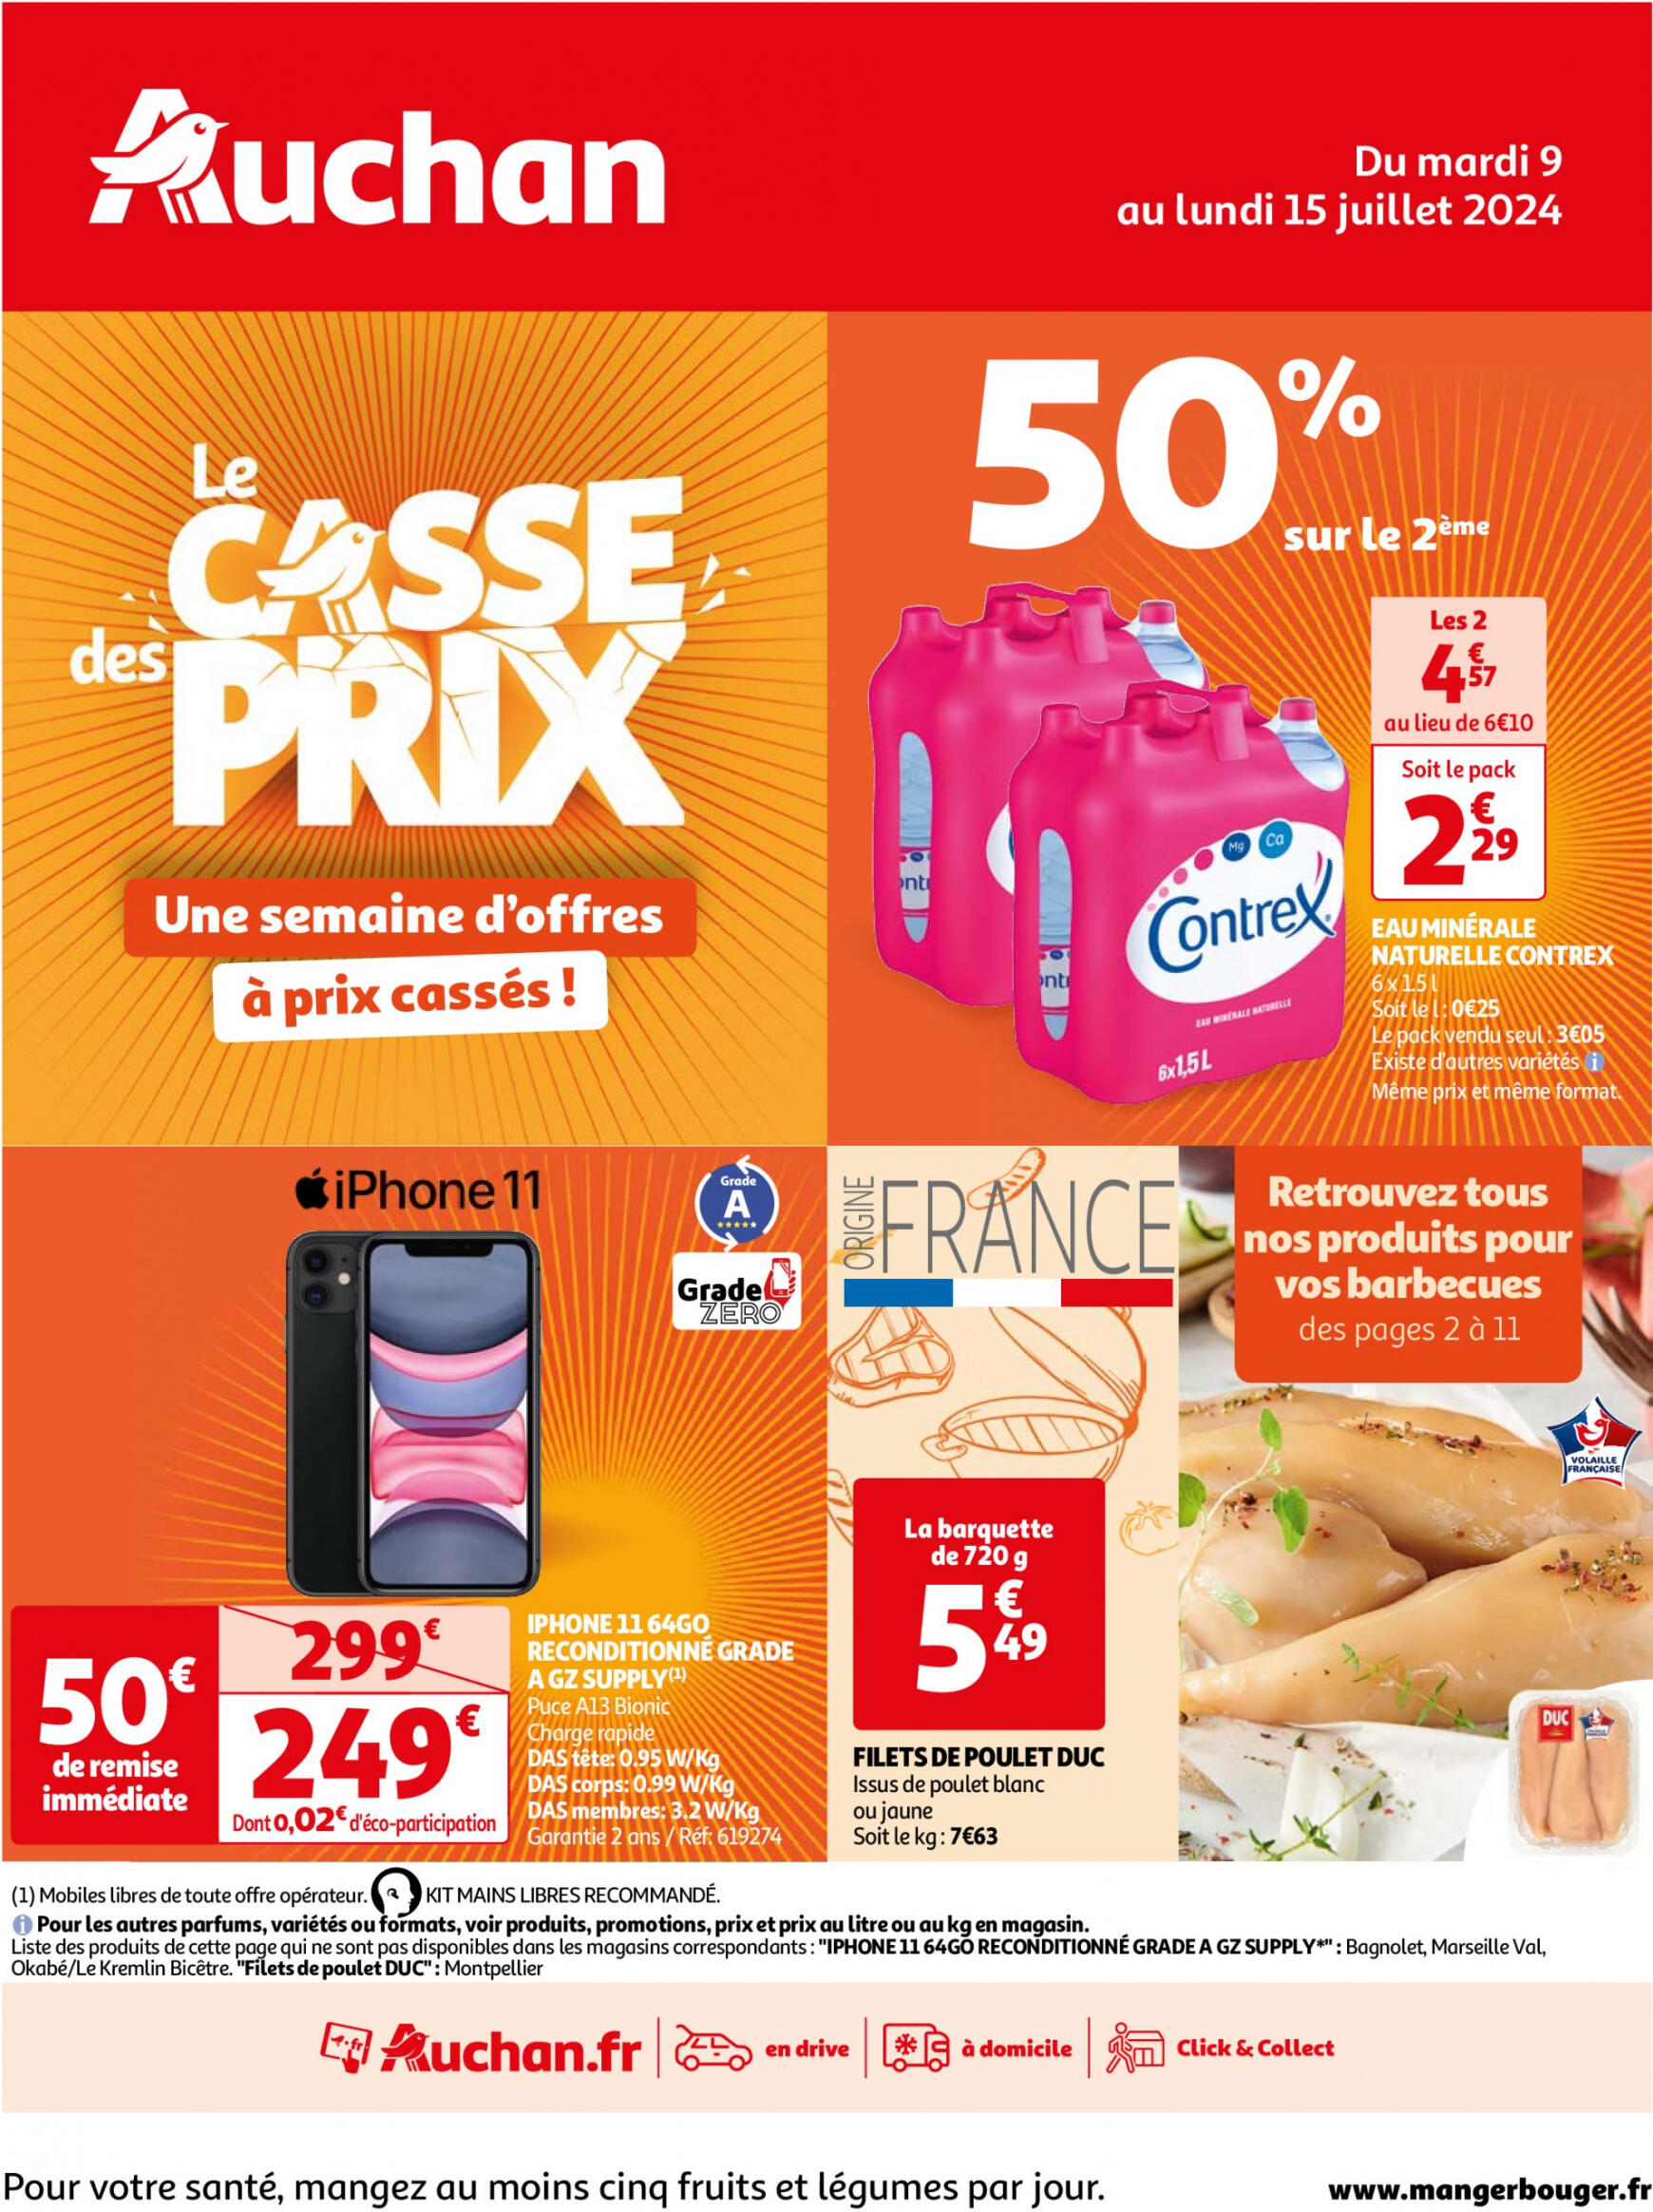 auchan - Prospectus Auchan - Le casse des prix, c'est maintenant ! actuel 09.07. - 15.07.